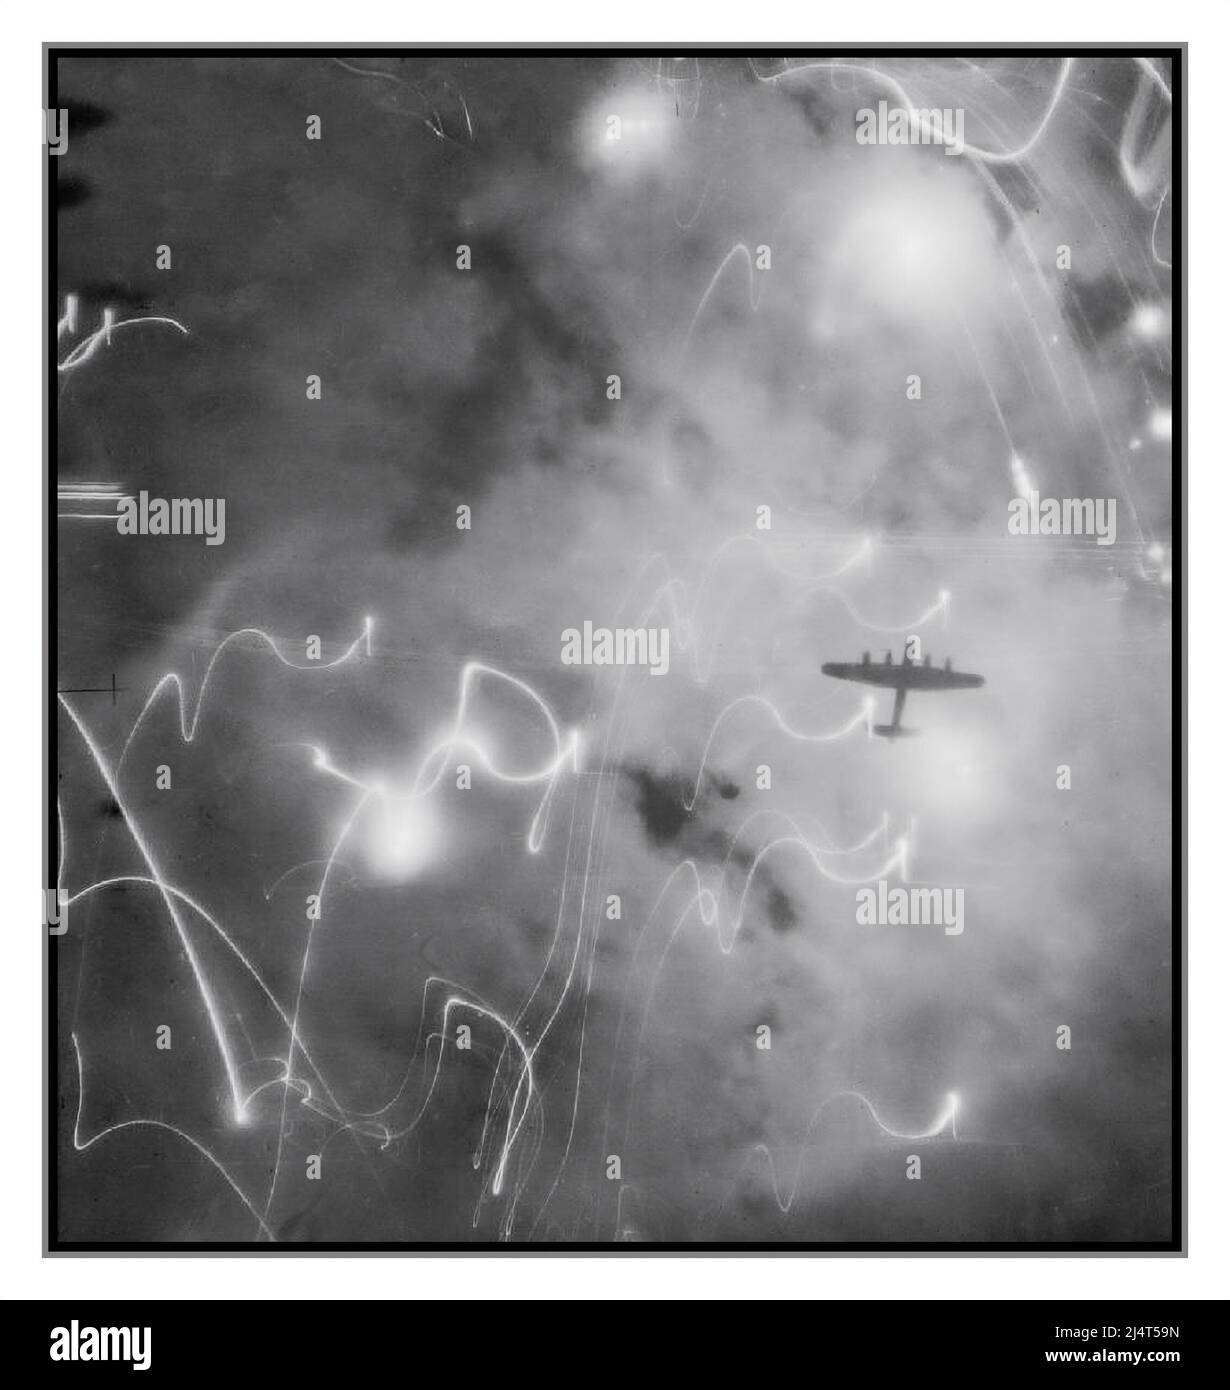 BOMBING RUN NIGHT WW2 HAMBURG bemerkenswertes Aufklärungsbild, das das Chaos von Fackeln und Feindfeuer mit alliierten Bombardierungen über Nazi-Deutschland illustriert ein Avro Lancaster vom No. 1 Group Bomber Command, der während des Angriffs auf Hamburg mit Flugzeugen der Nr. 1 gegen Fackeln, Rauch und Explosionen silhouettiert wurde, 5 und 8 Gruppen in der Nacht vom 30/31. Januar 1943. Dieser Angriff war das erste Mal, dass das Pathfinder-Flugzeug ein H2S-Zentimeter-Radar zur Navigation der Bombardierung verwendete. Damit wir nicht den Einsatz und die Opferbereitschaft der RAF-Besatzungen des britischen Bomberkommandos vergessen Stockfoto